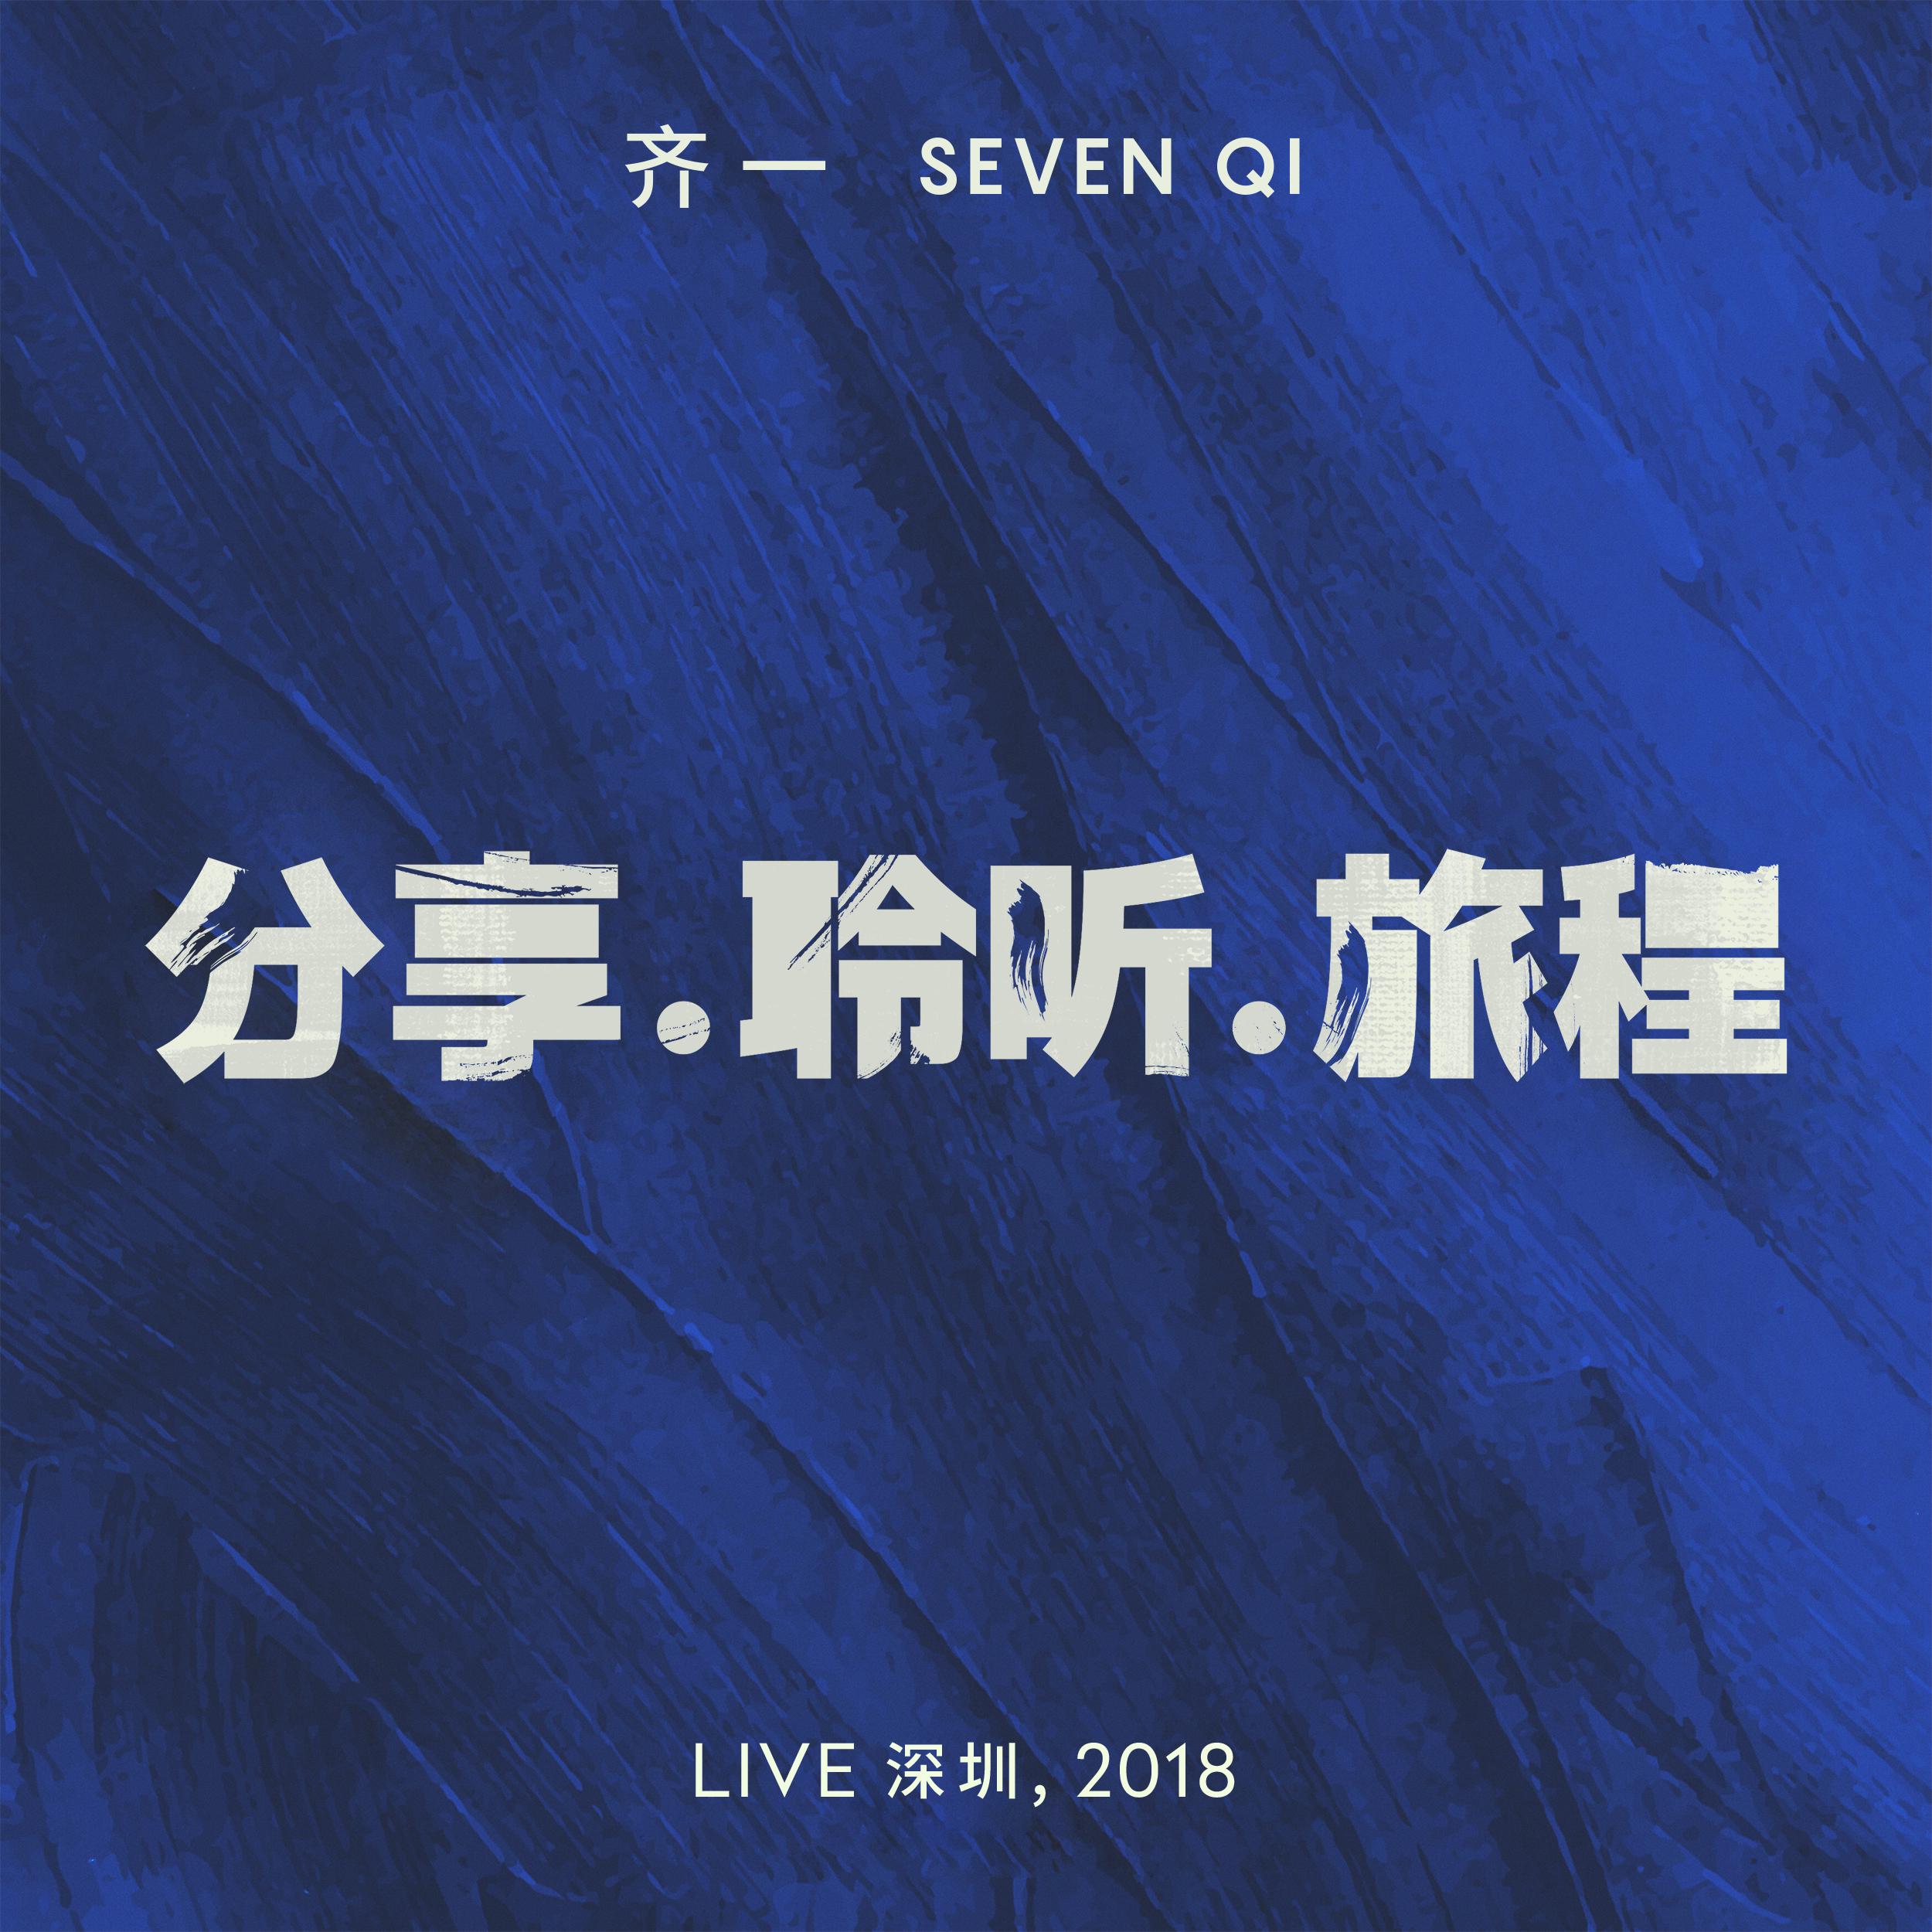 分享.聆听.旅程 (Live 深圳, 2018)专辑